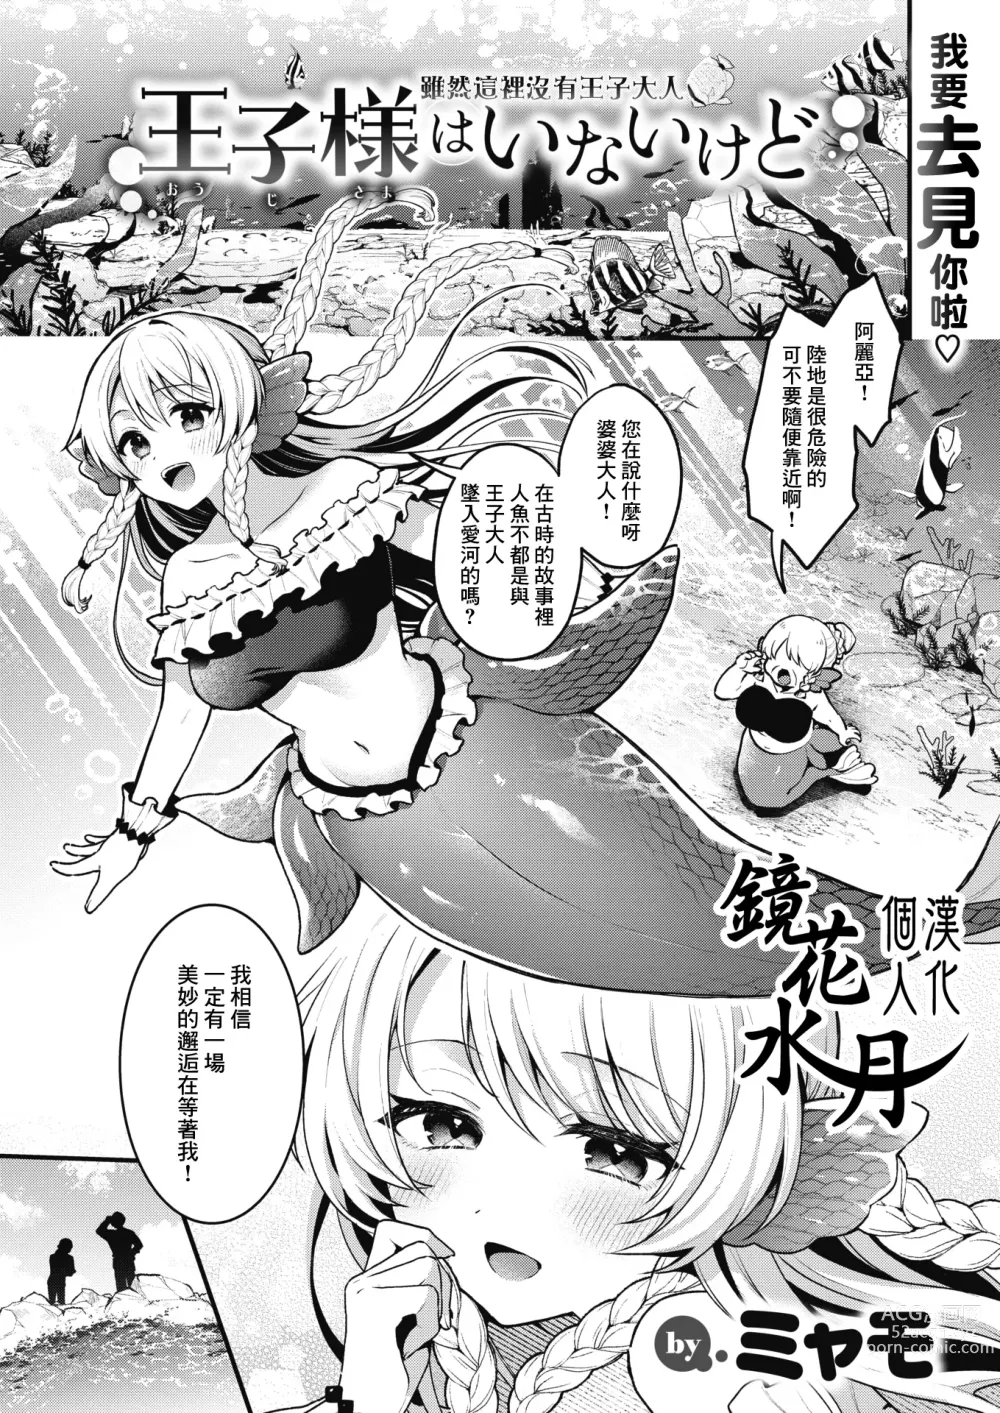 Page 1 of manga 雖然這裡沒有王子大人